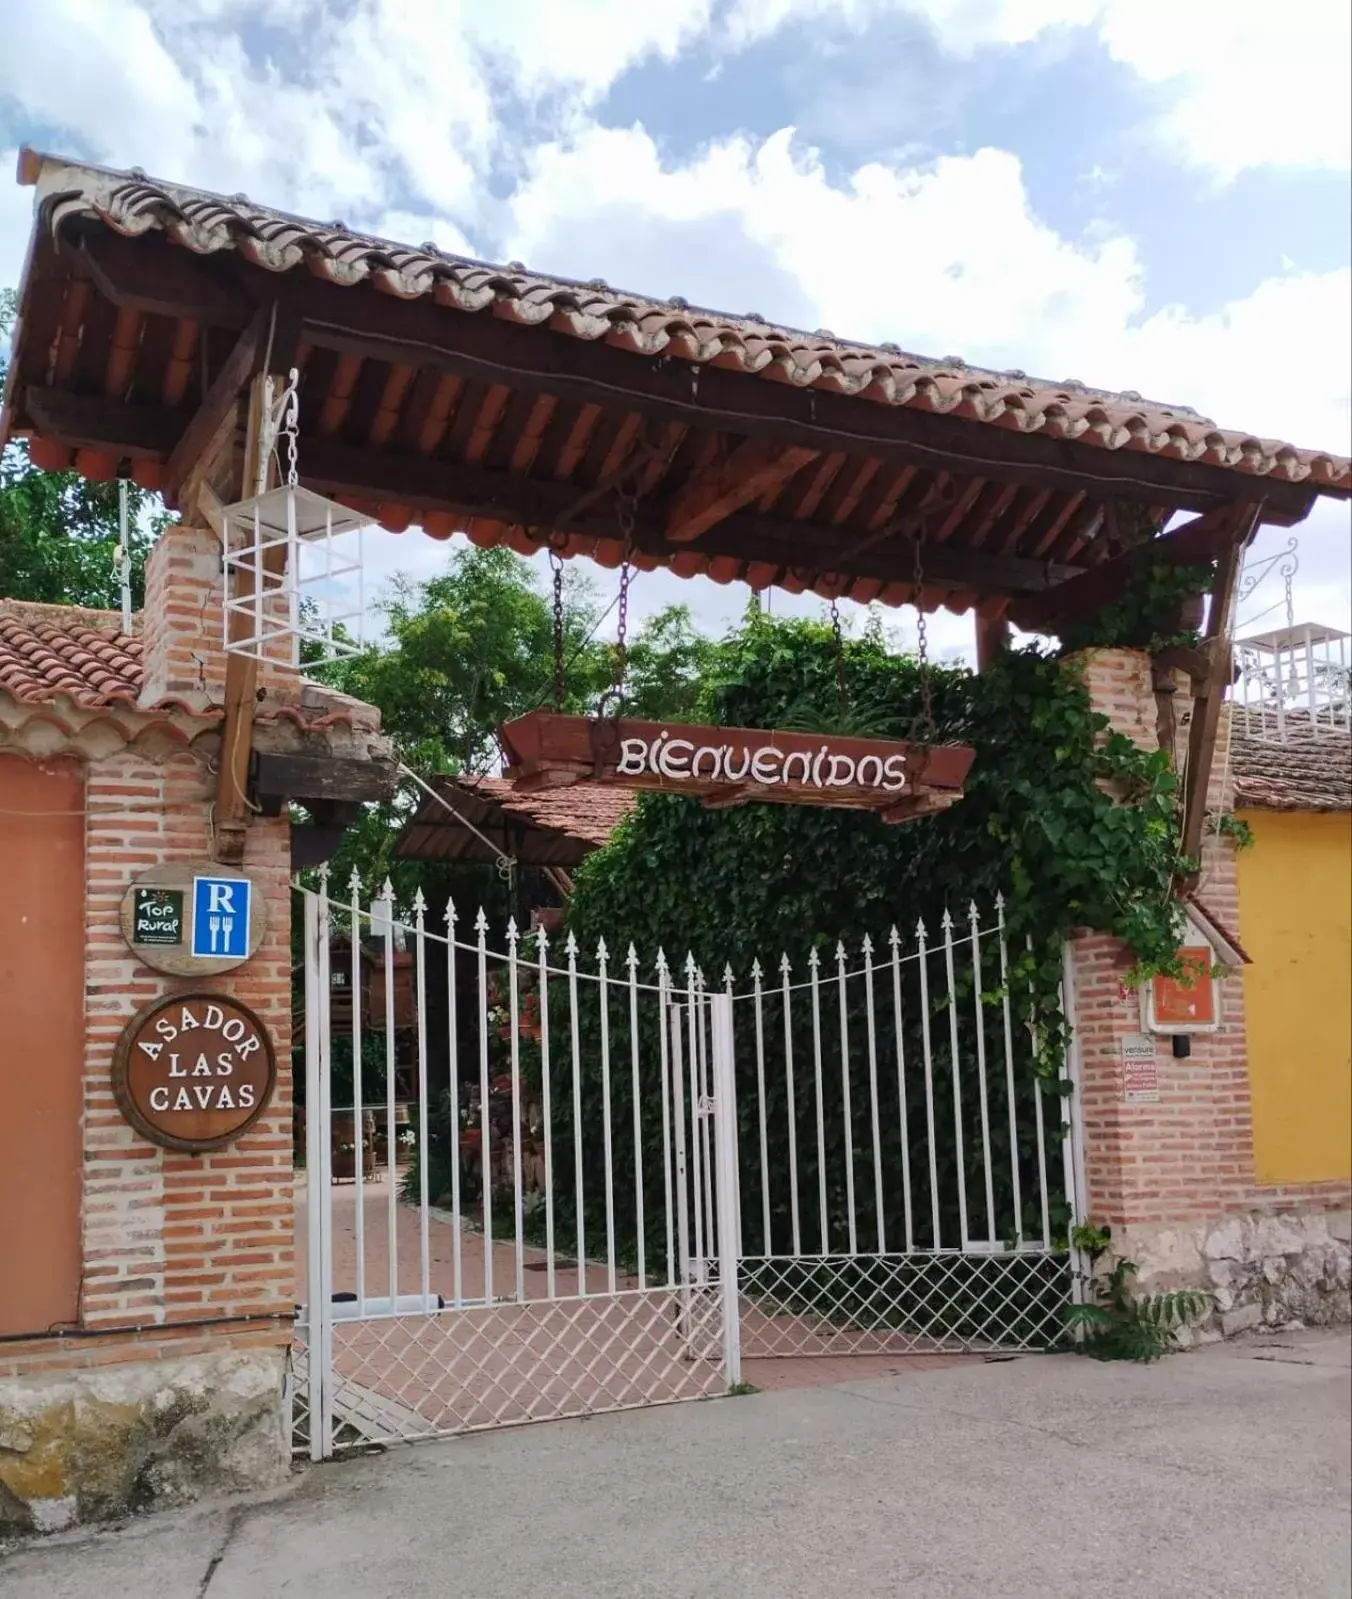 Restaurant/places to eat in Hospedium Hacienda Las Cavas